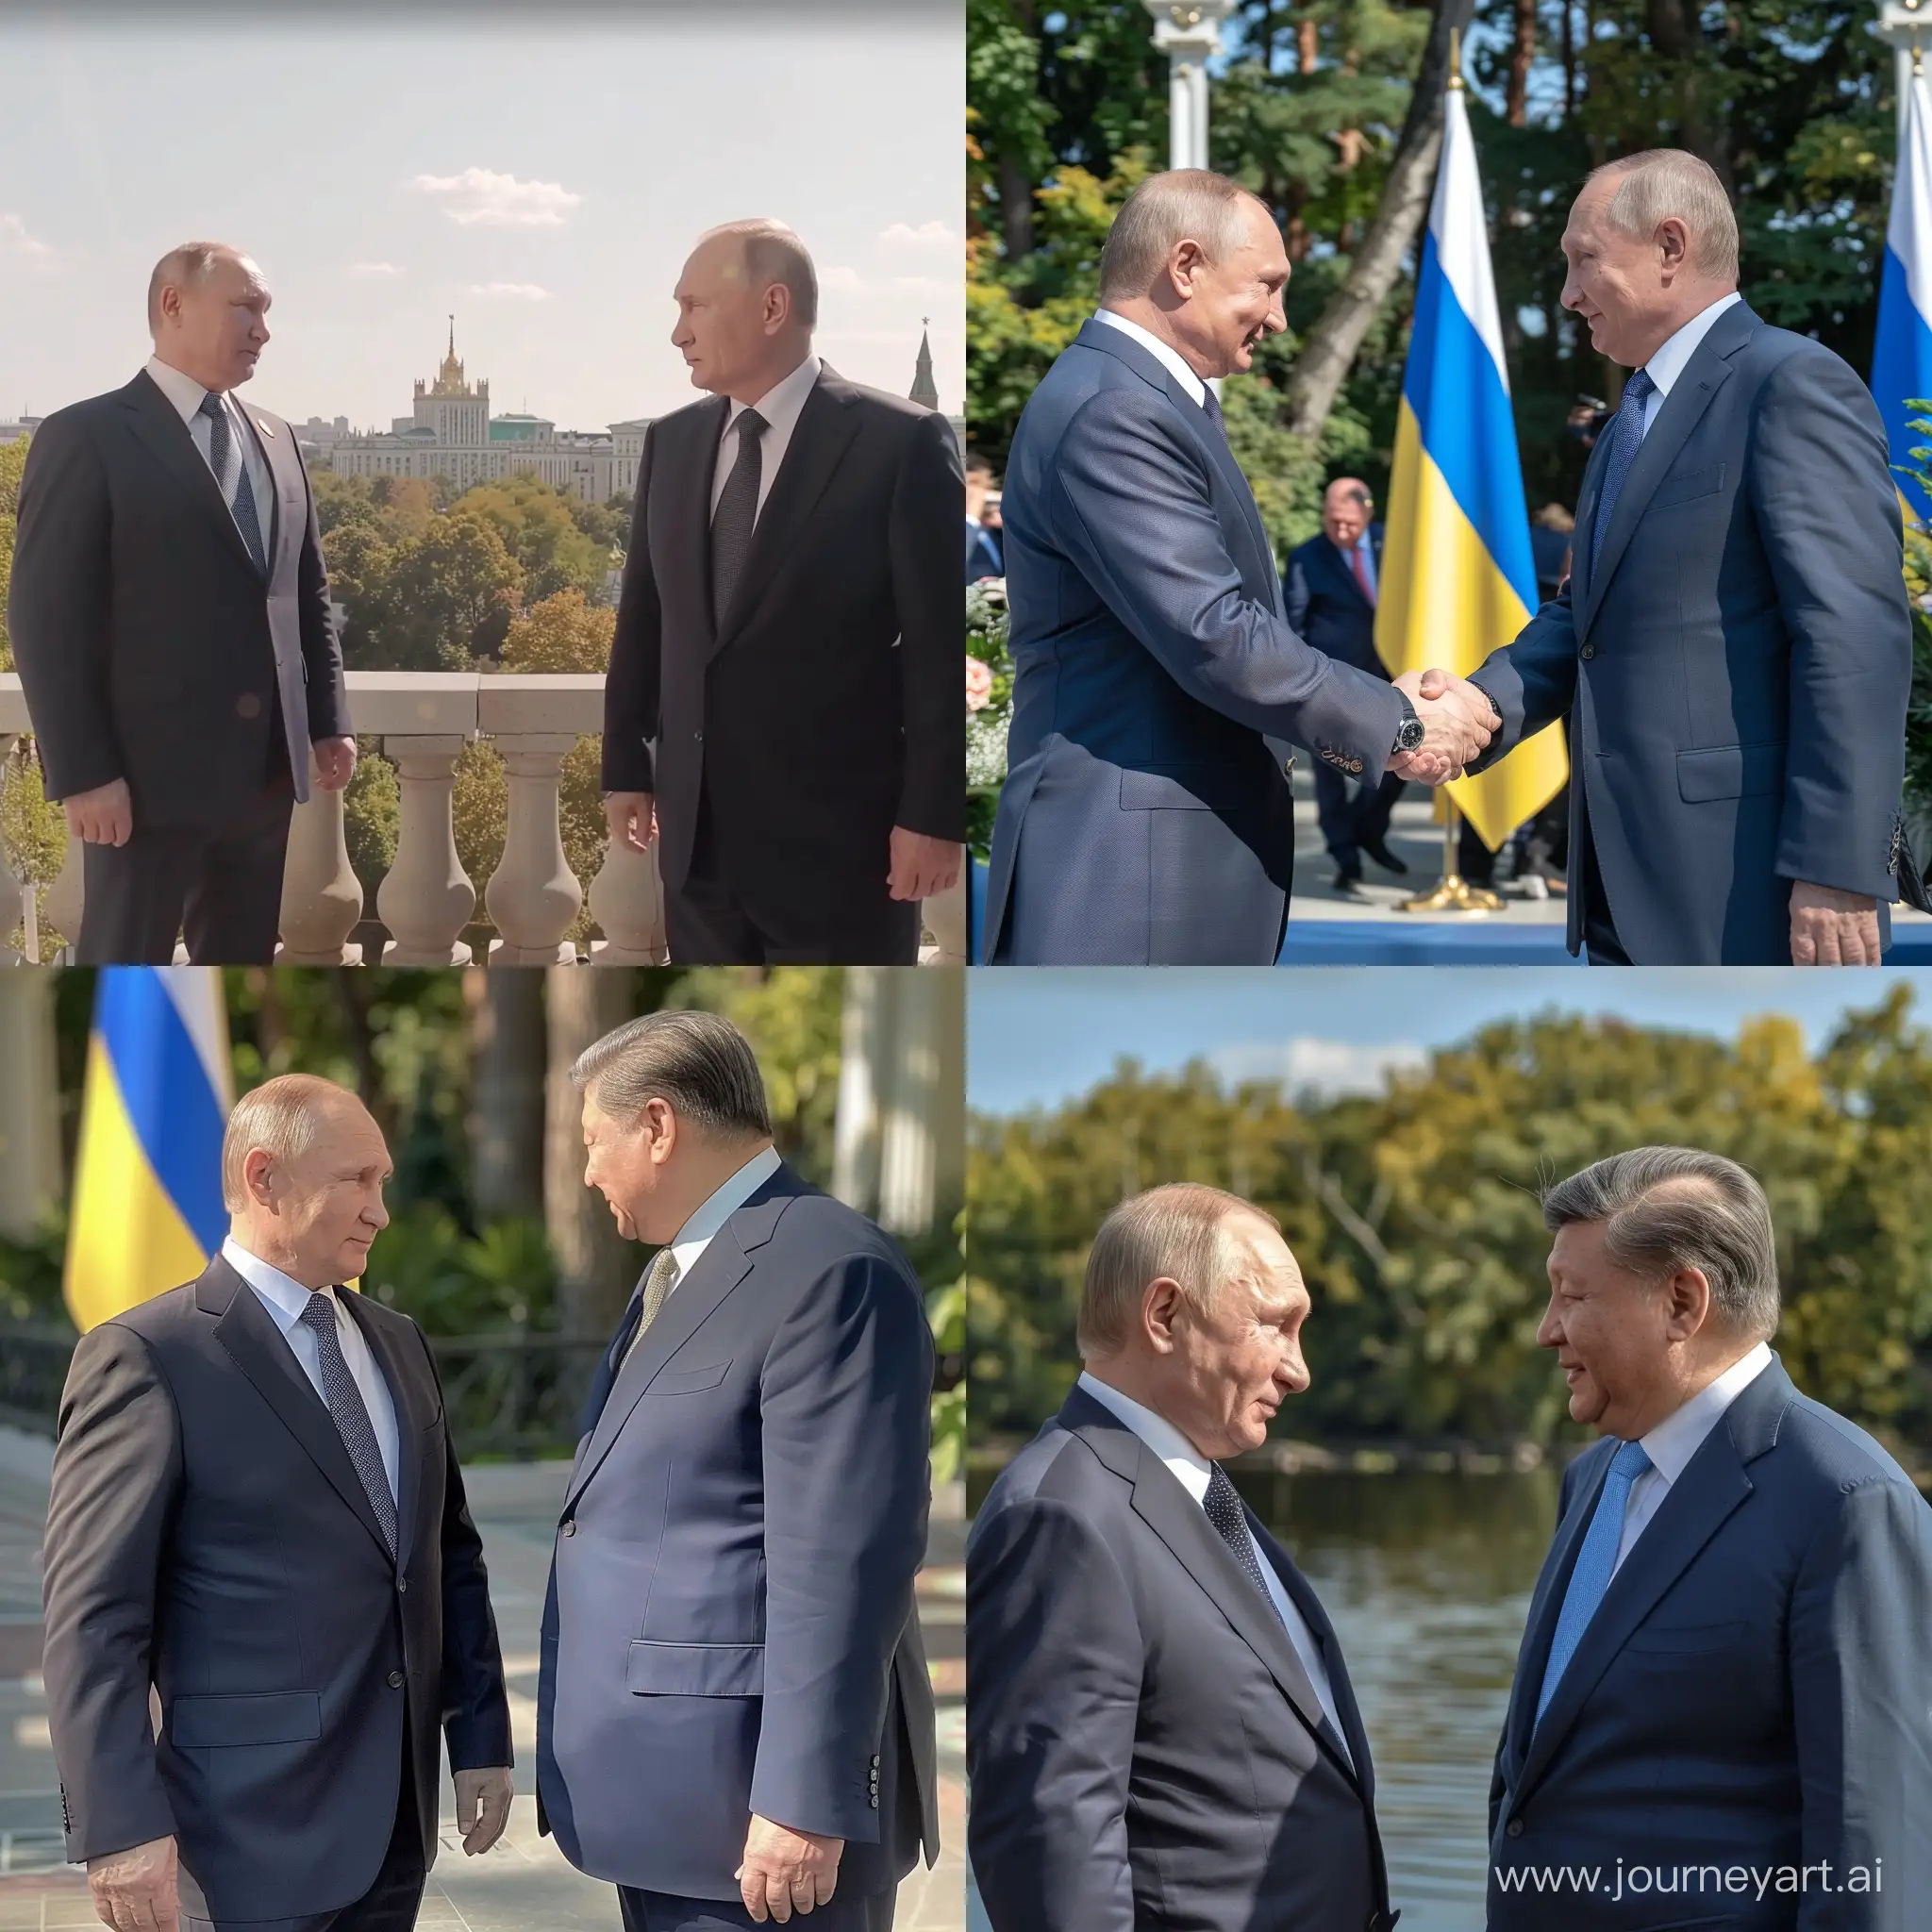 Президент России случайно толкнул президента Украины, 4к, накаченные тела, RTX, солнечный, накаченные тела